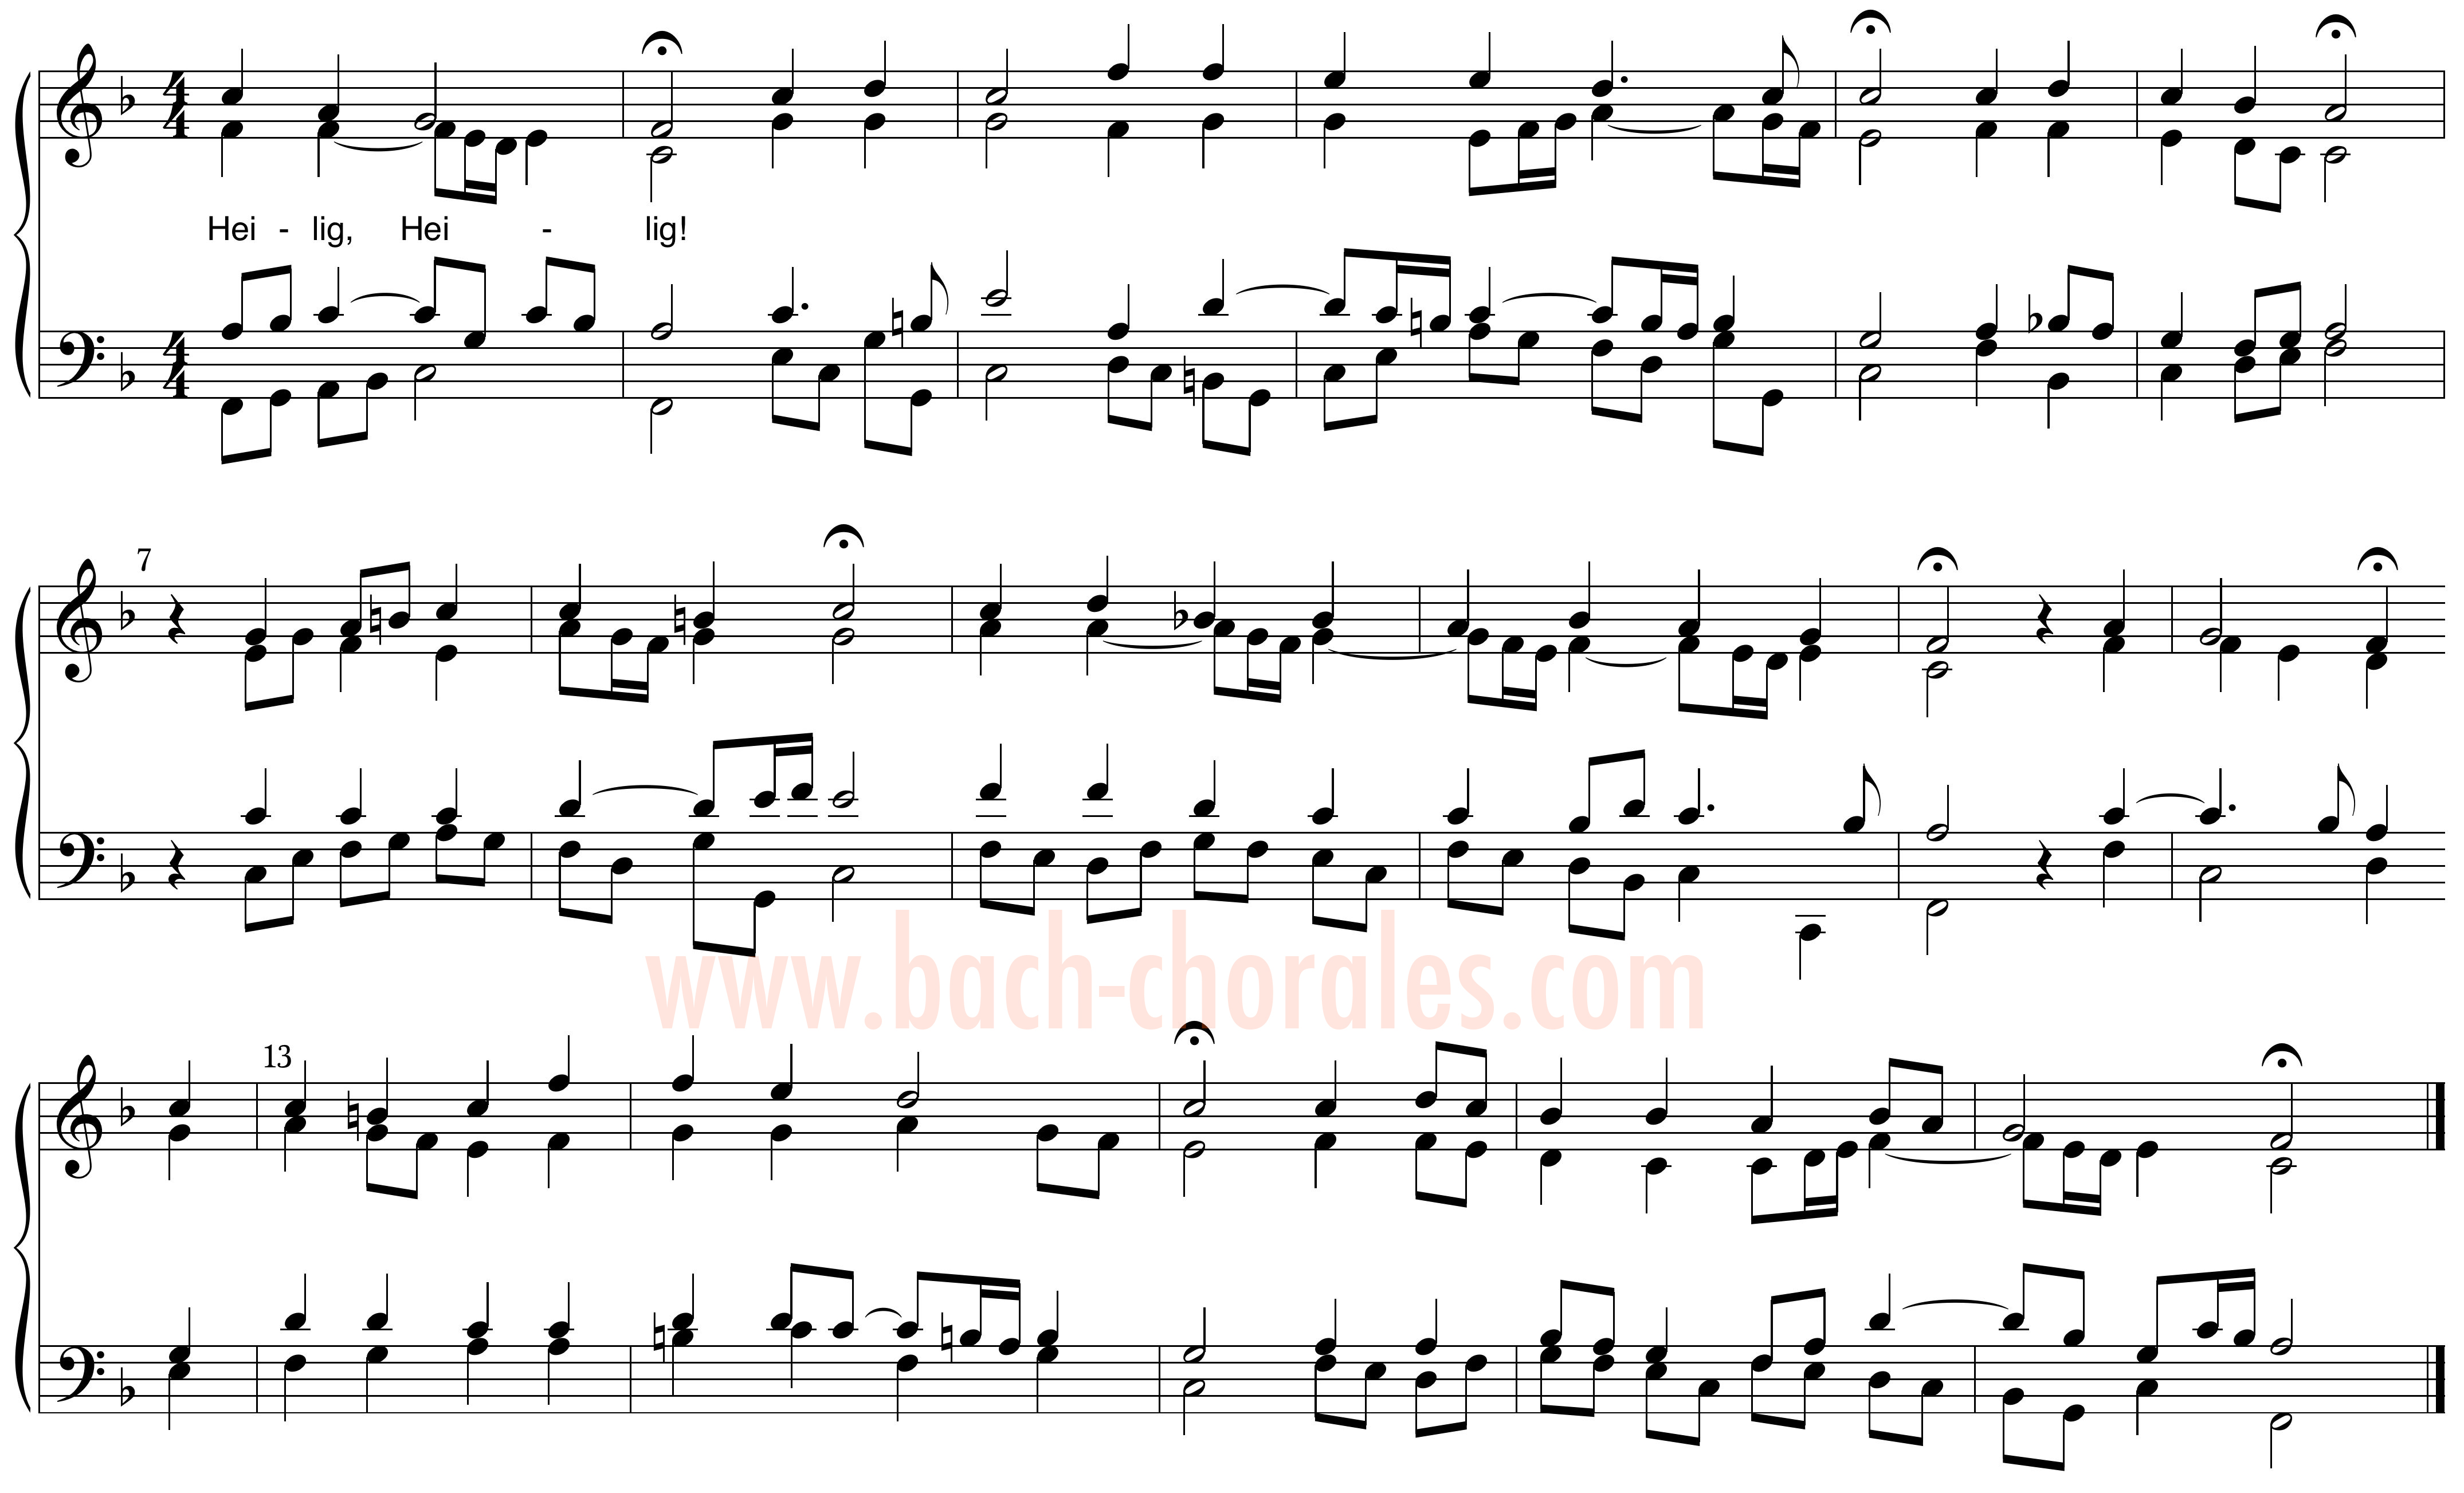 notenbeeld BWV 325 op https://www.bach-chorales.com/